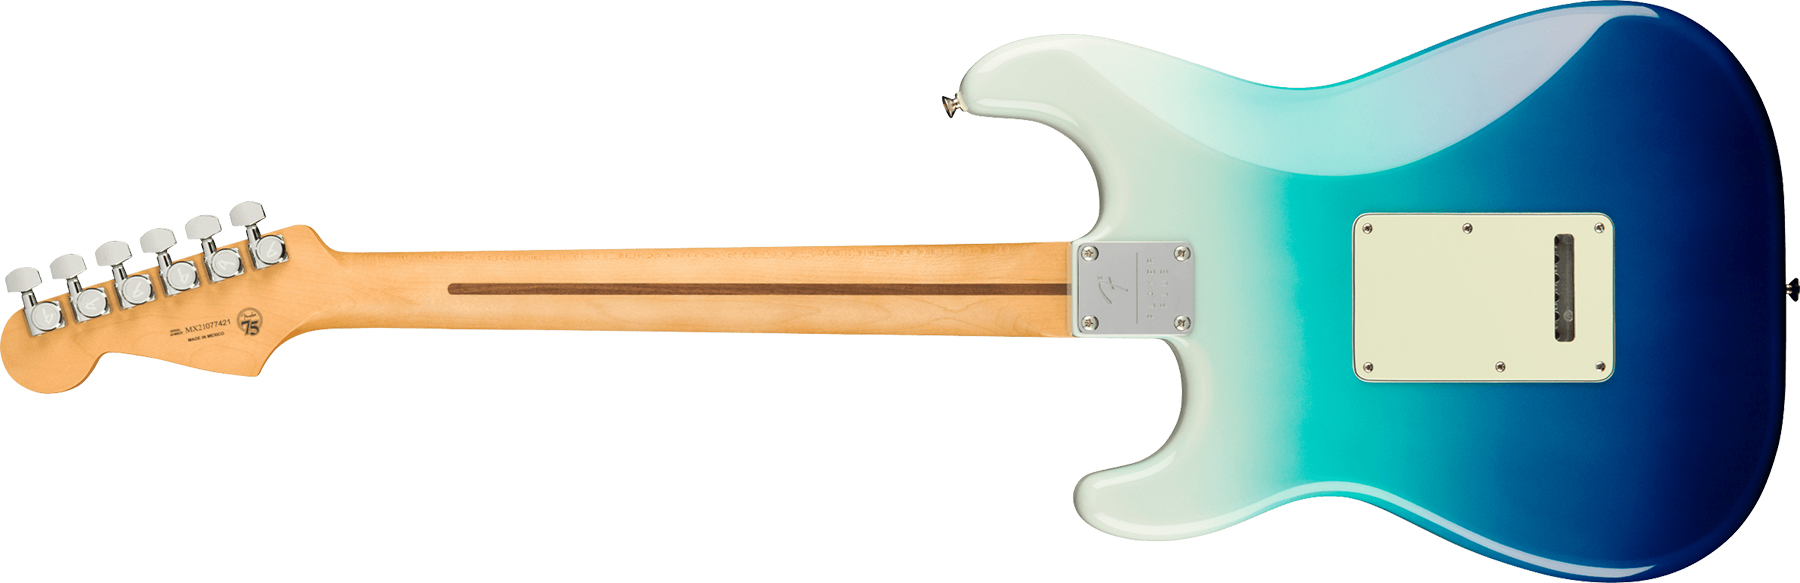 Fender Strat Player Plus Mex Hss Trem Pf - Belair Blue - E-Gitarre in Str-Form - Variation 1